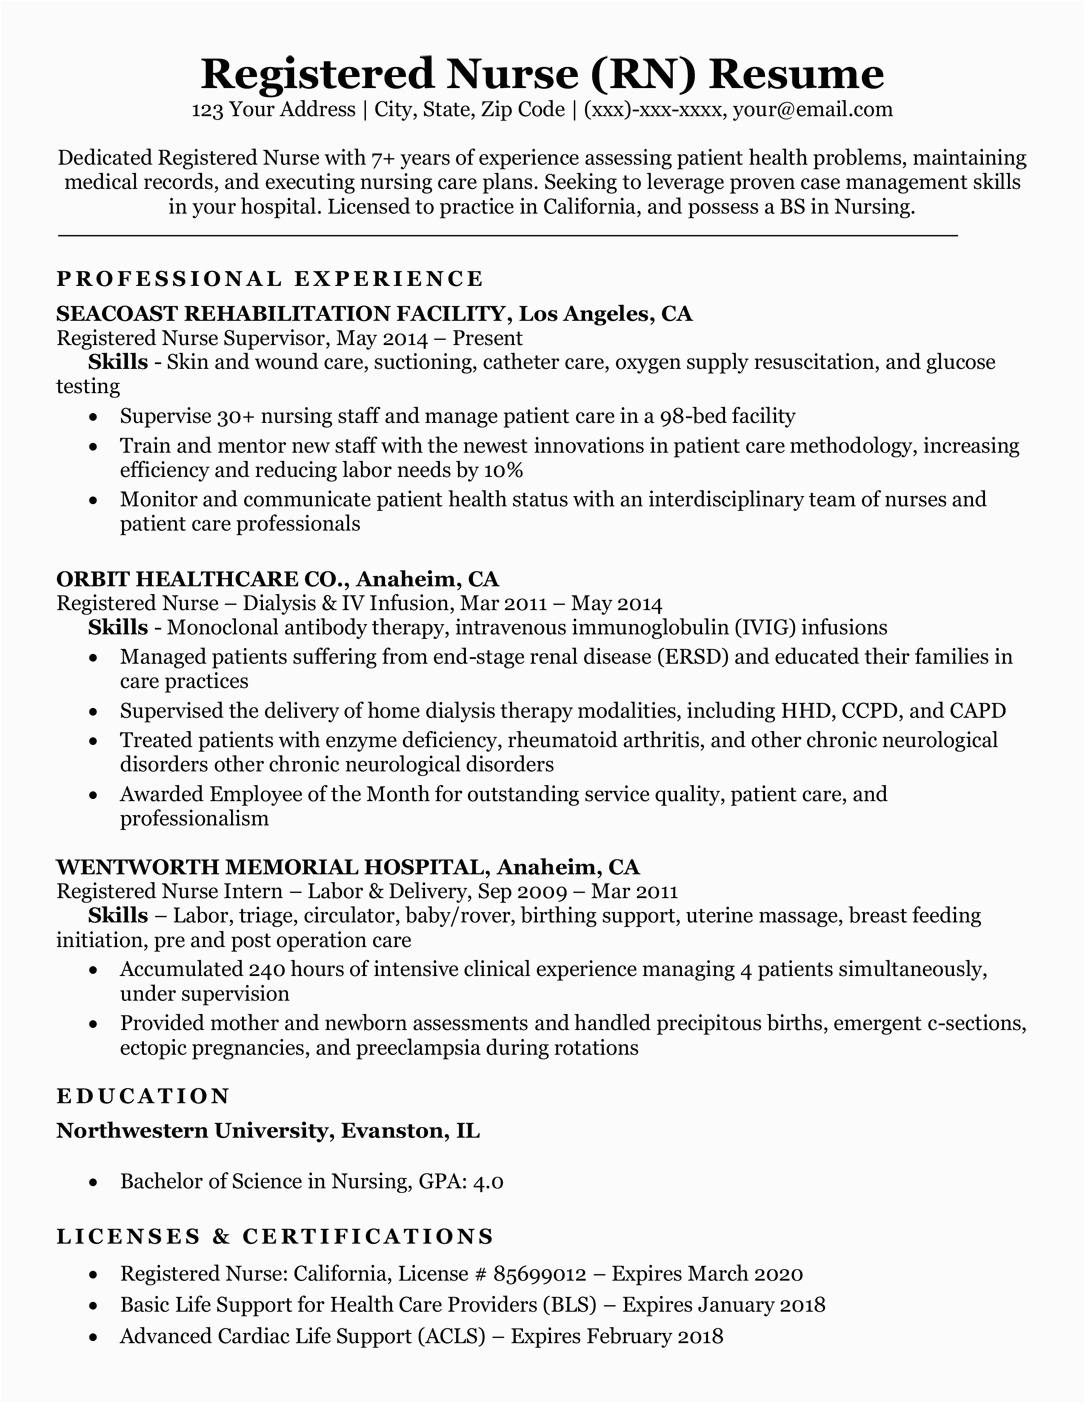 Sample Resume for Registered Nurse Position Registered Nurse Rn Resume Sample & Tips